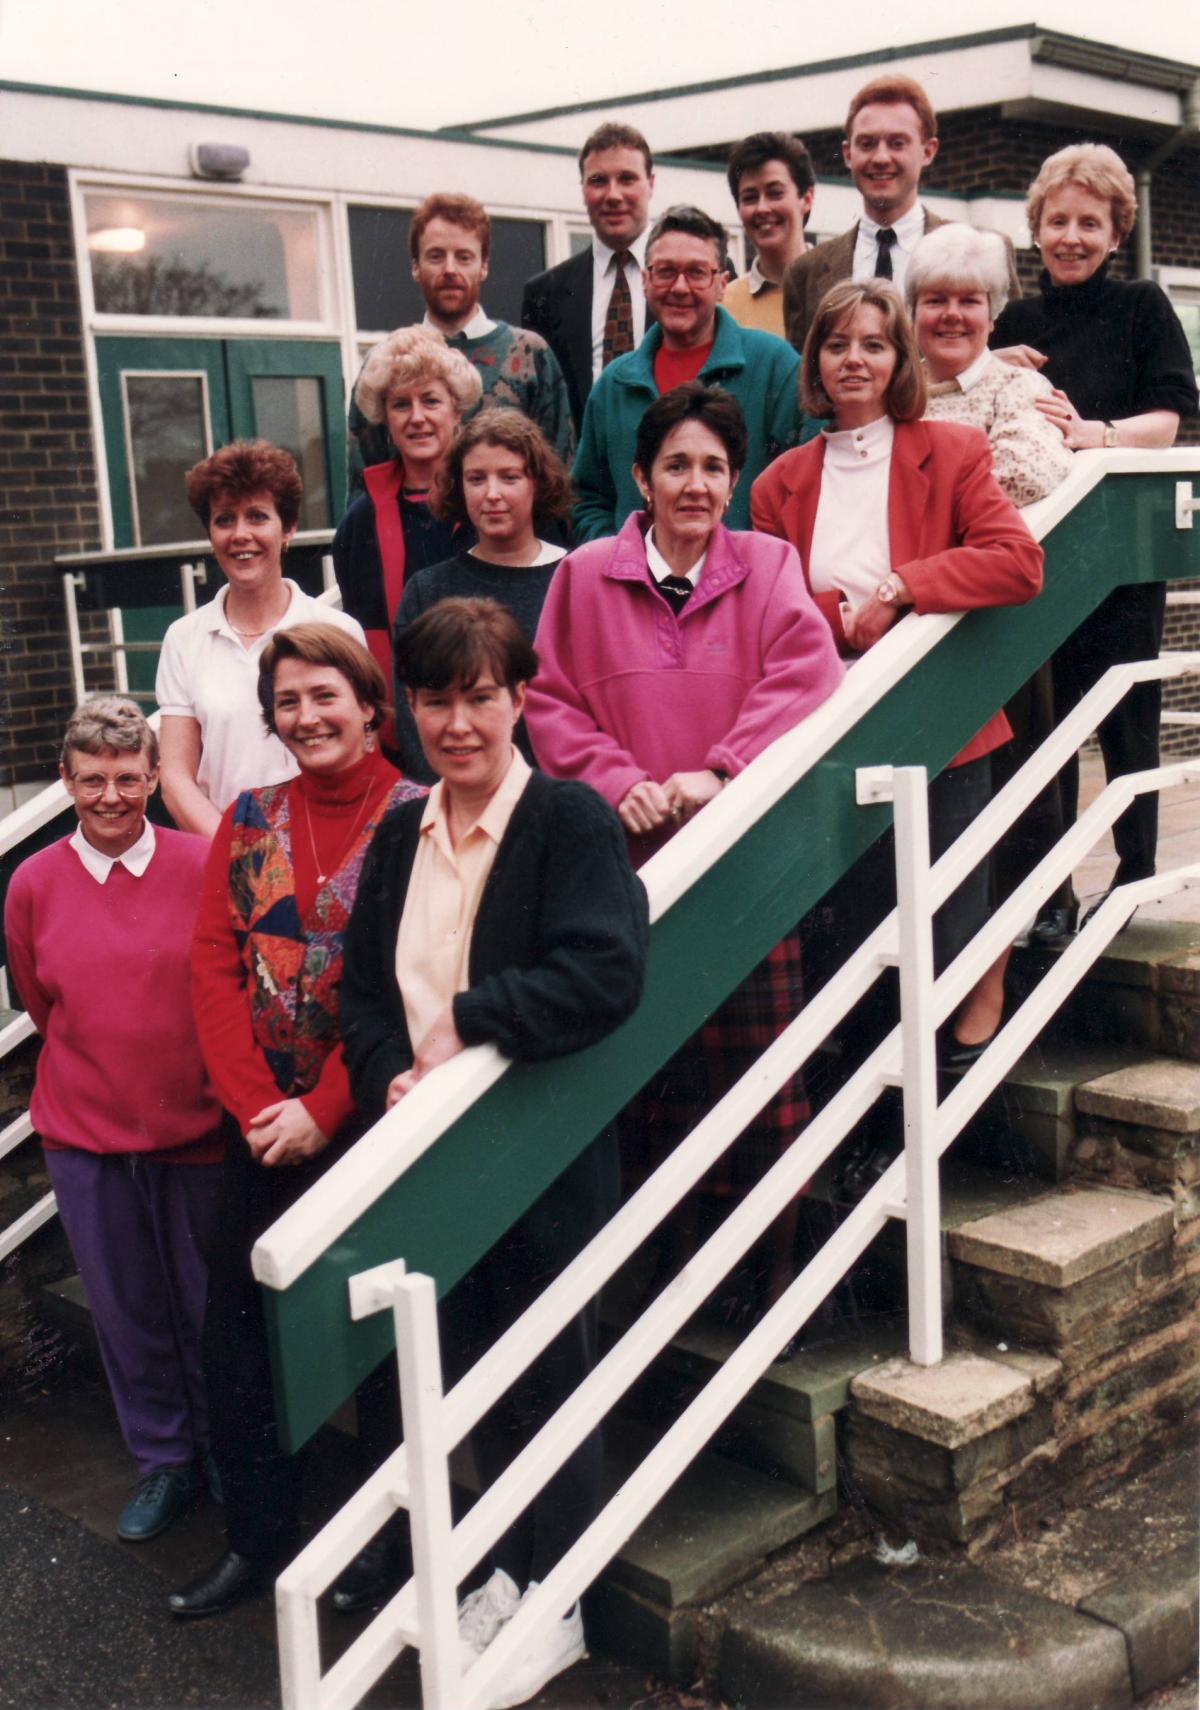 St Joseph's College staff in 1994